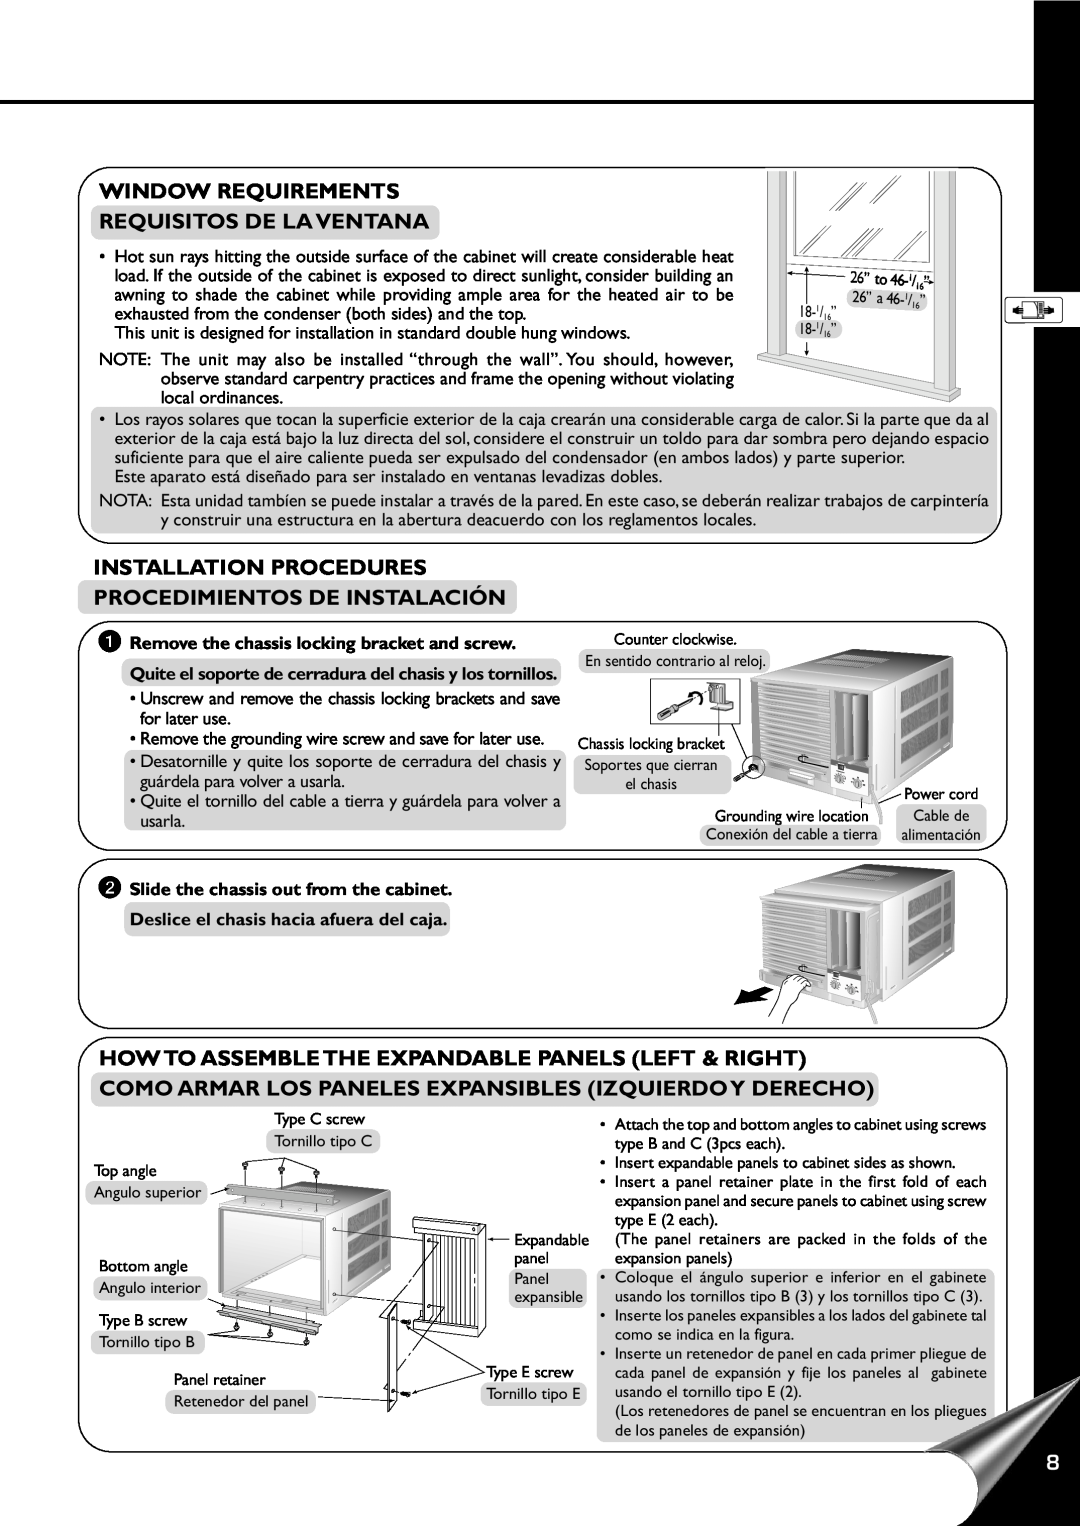 Panasonic HQ-2201SH Window Requirements Requisitos De La Ventana, Installation Procedures, Procedimientos De Instalación 